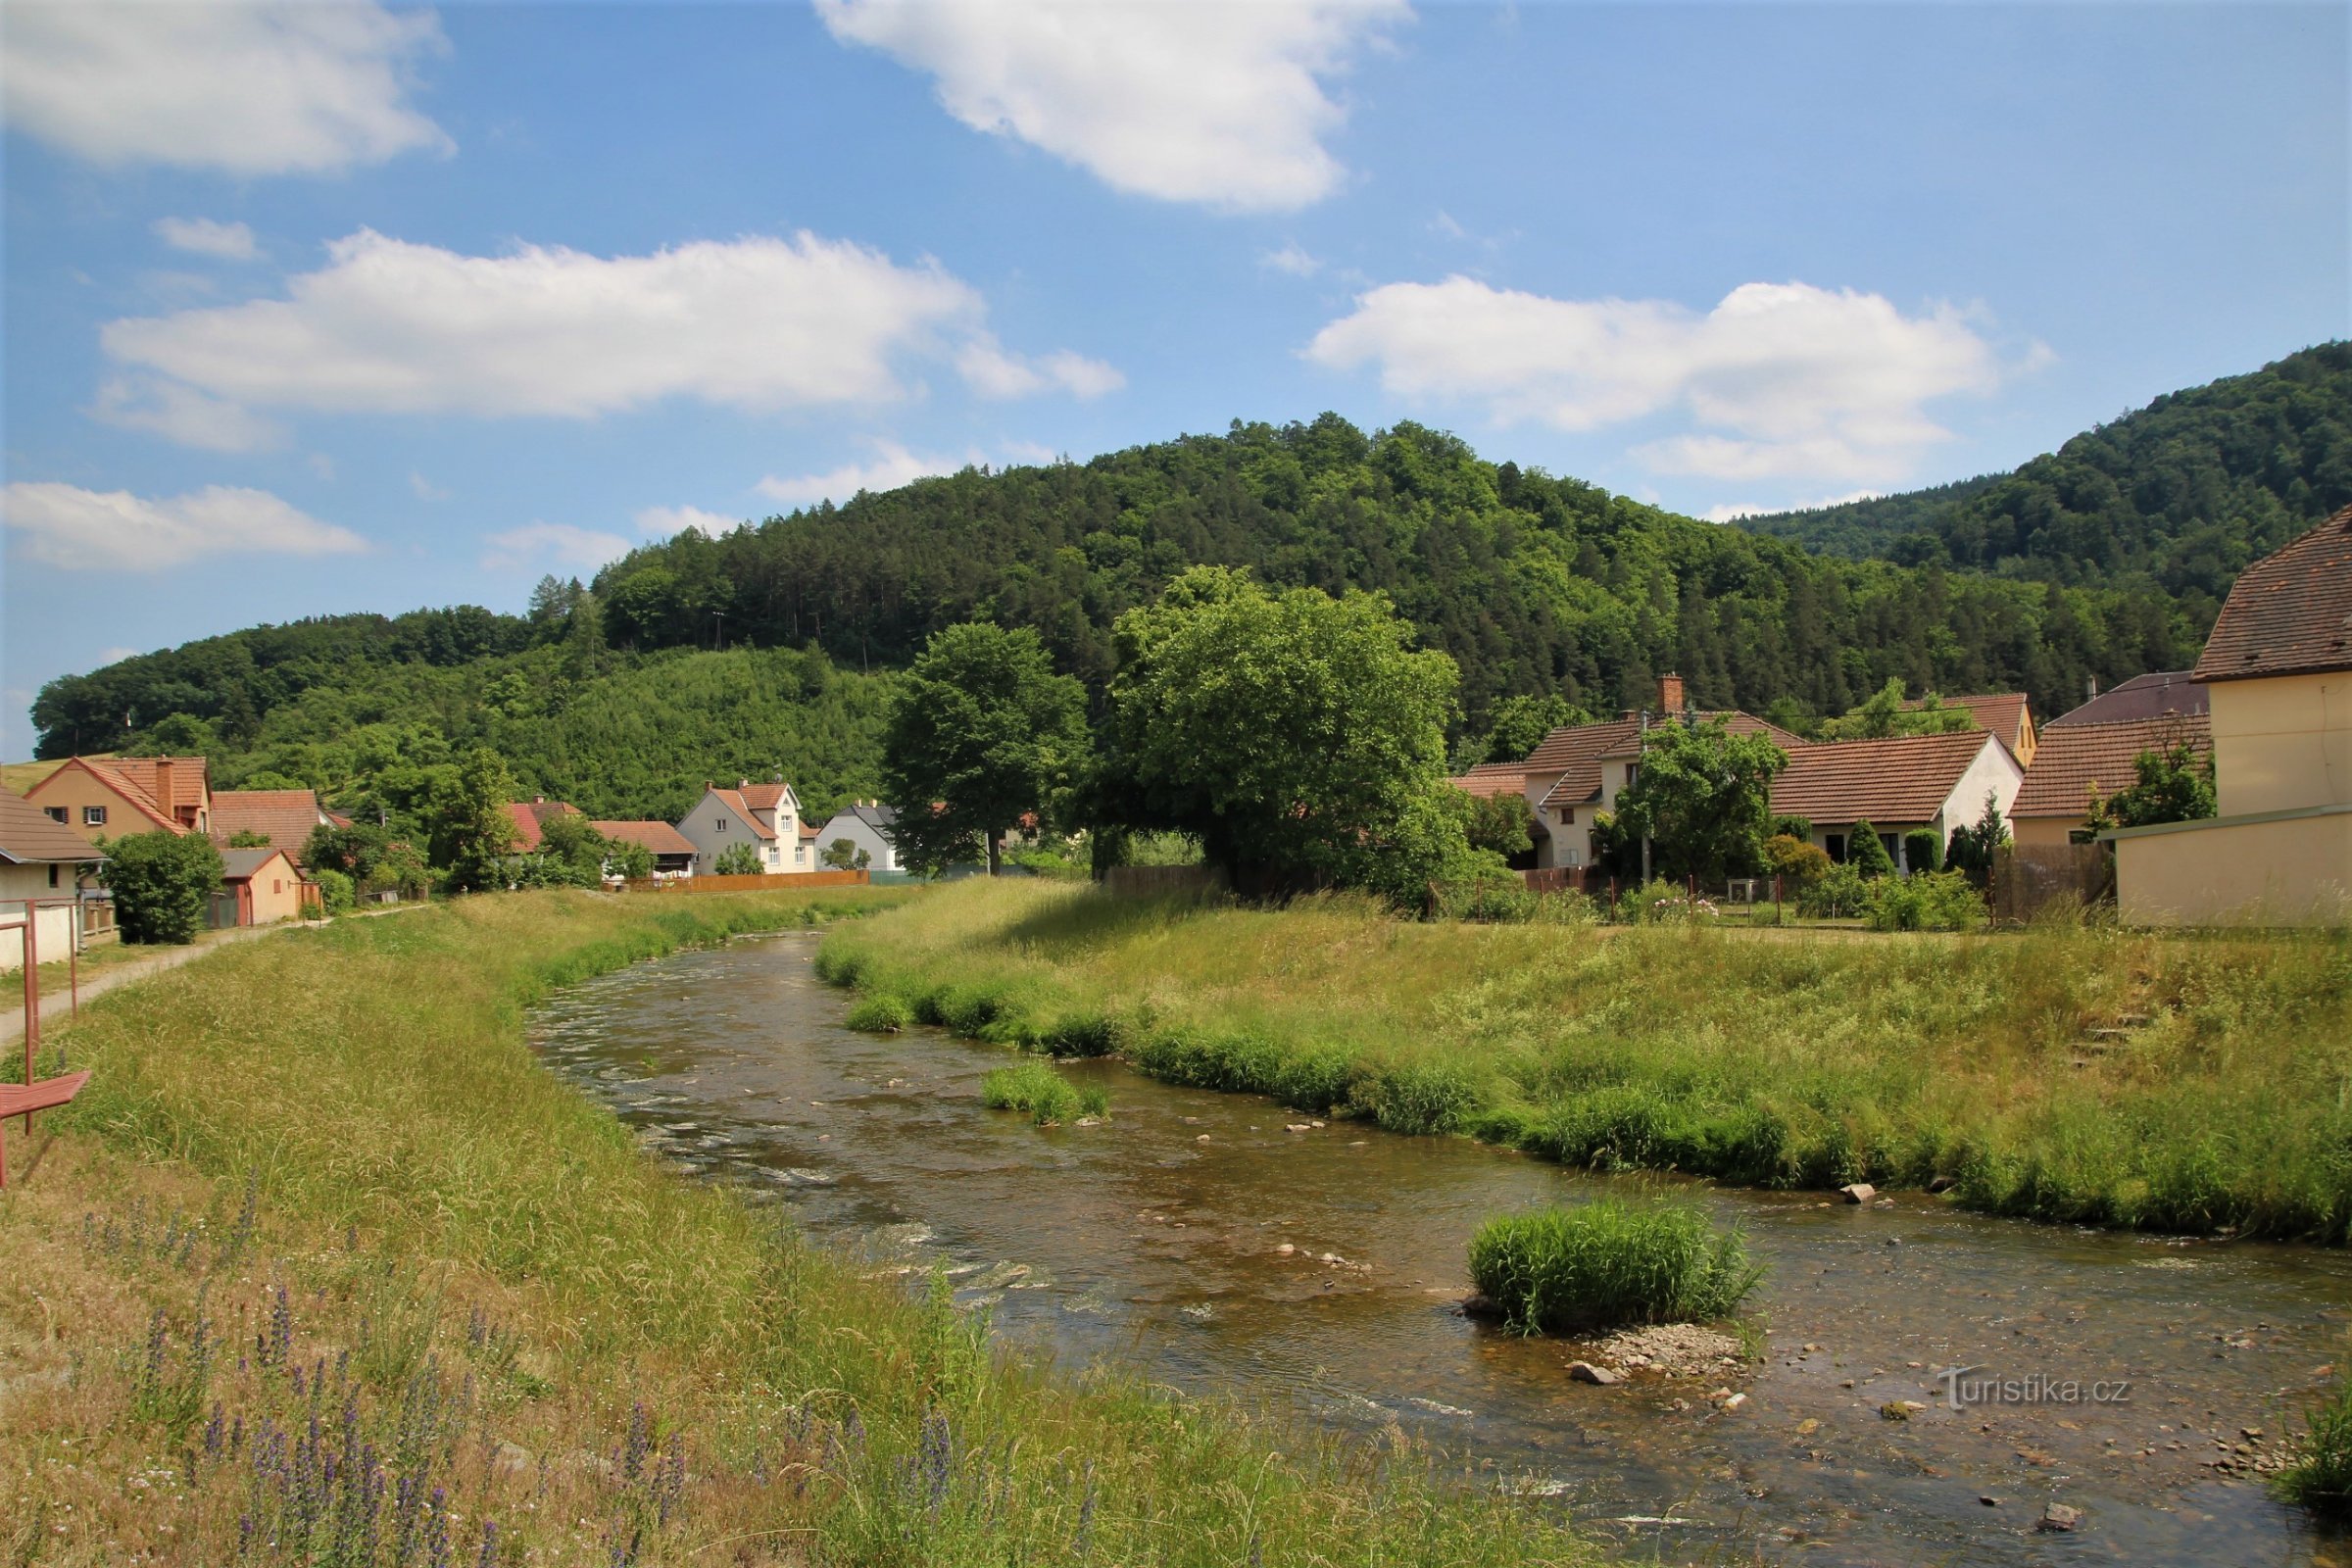 Loučka River